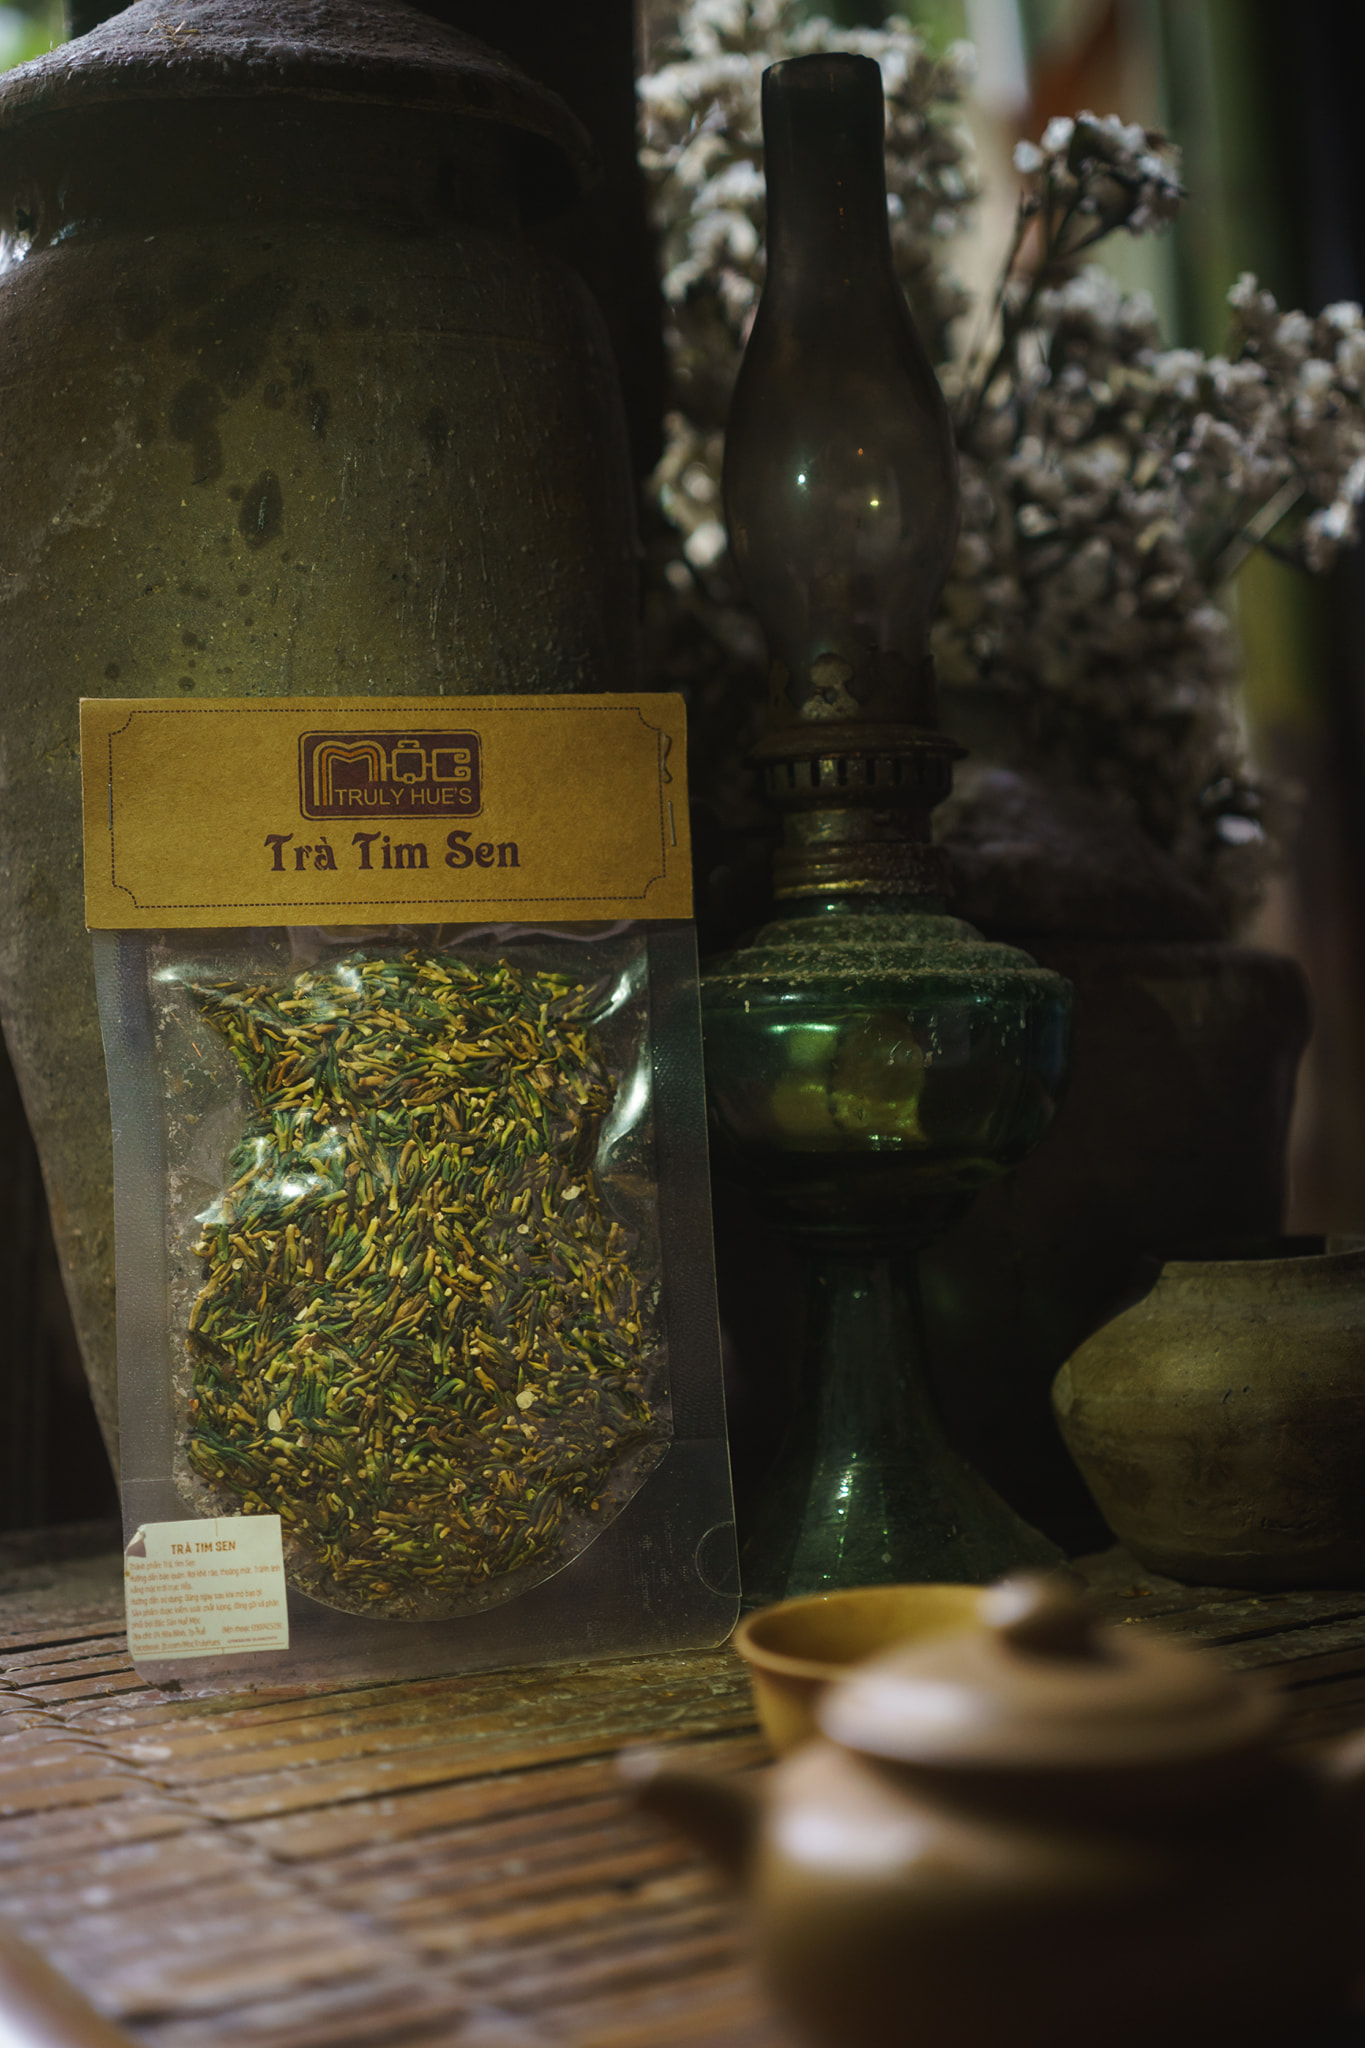 Trà tim sen Mộc: Hương thơm nồng của trà tim sen Mộc sẽ khiến bạn cảm thấy thư thái và đắm say. Hãy tìm hiểu về cách chế biến loại trà này để có một trải nghiệm đầy đủ sức sống và niềm vui.